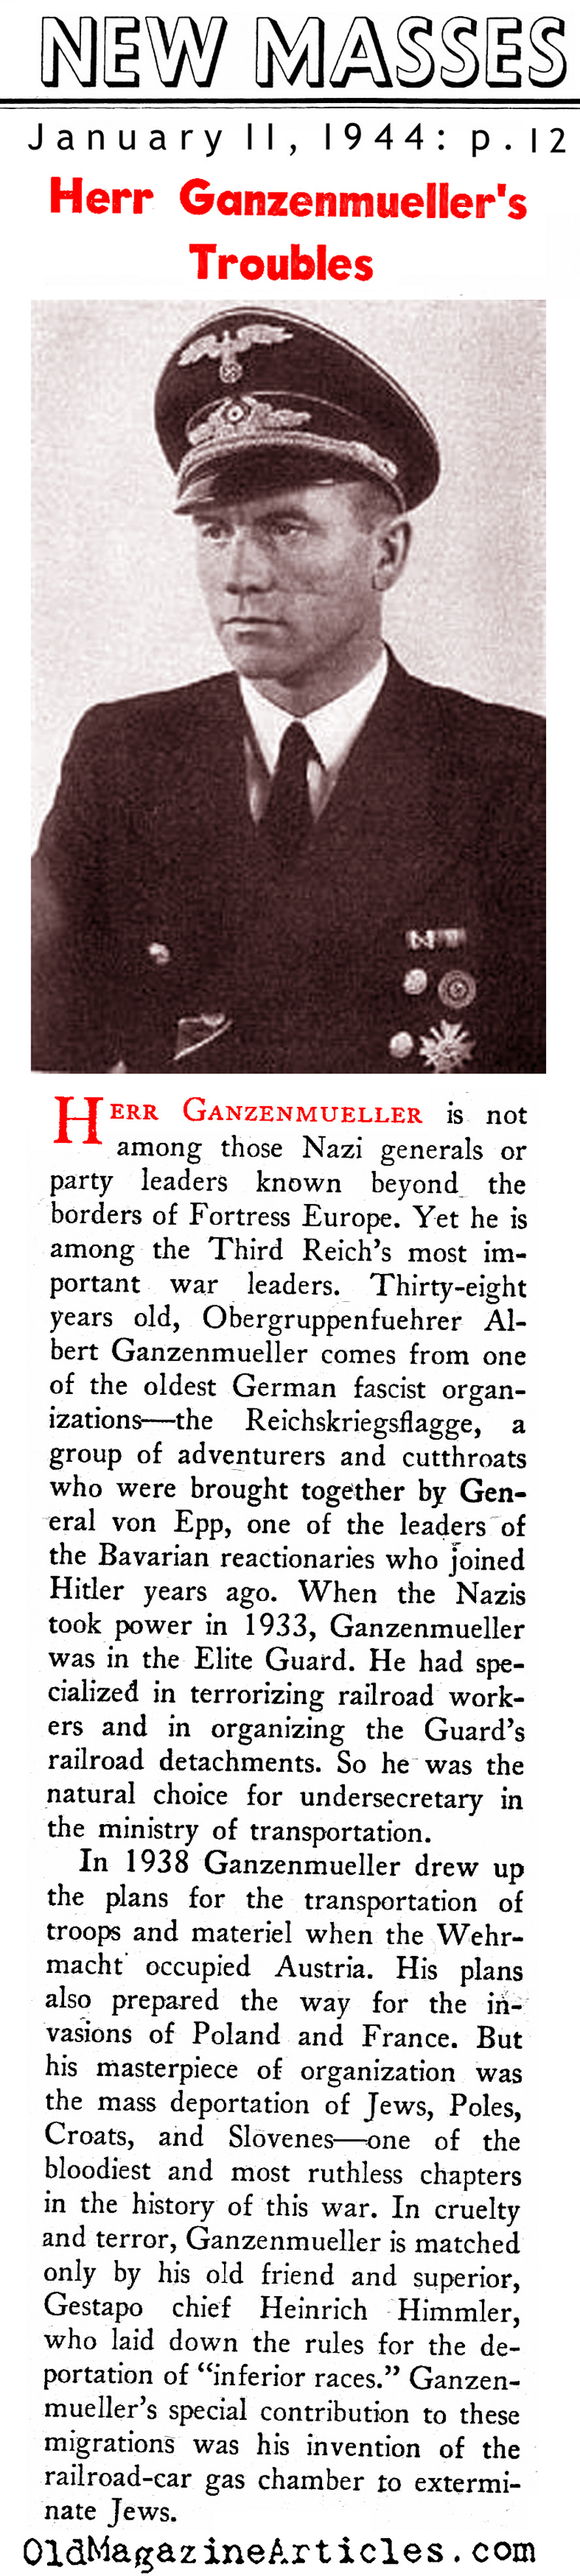 Albert Ganzenmüller (New Masses, 1944)